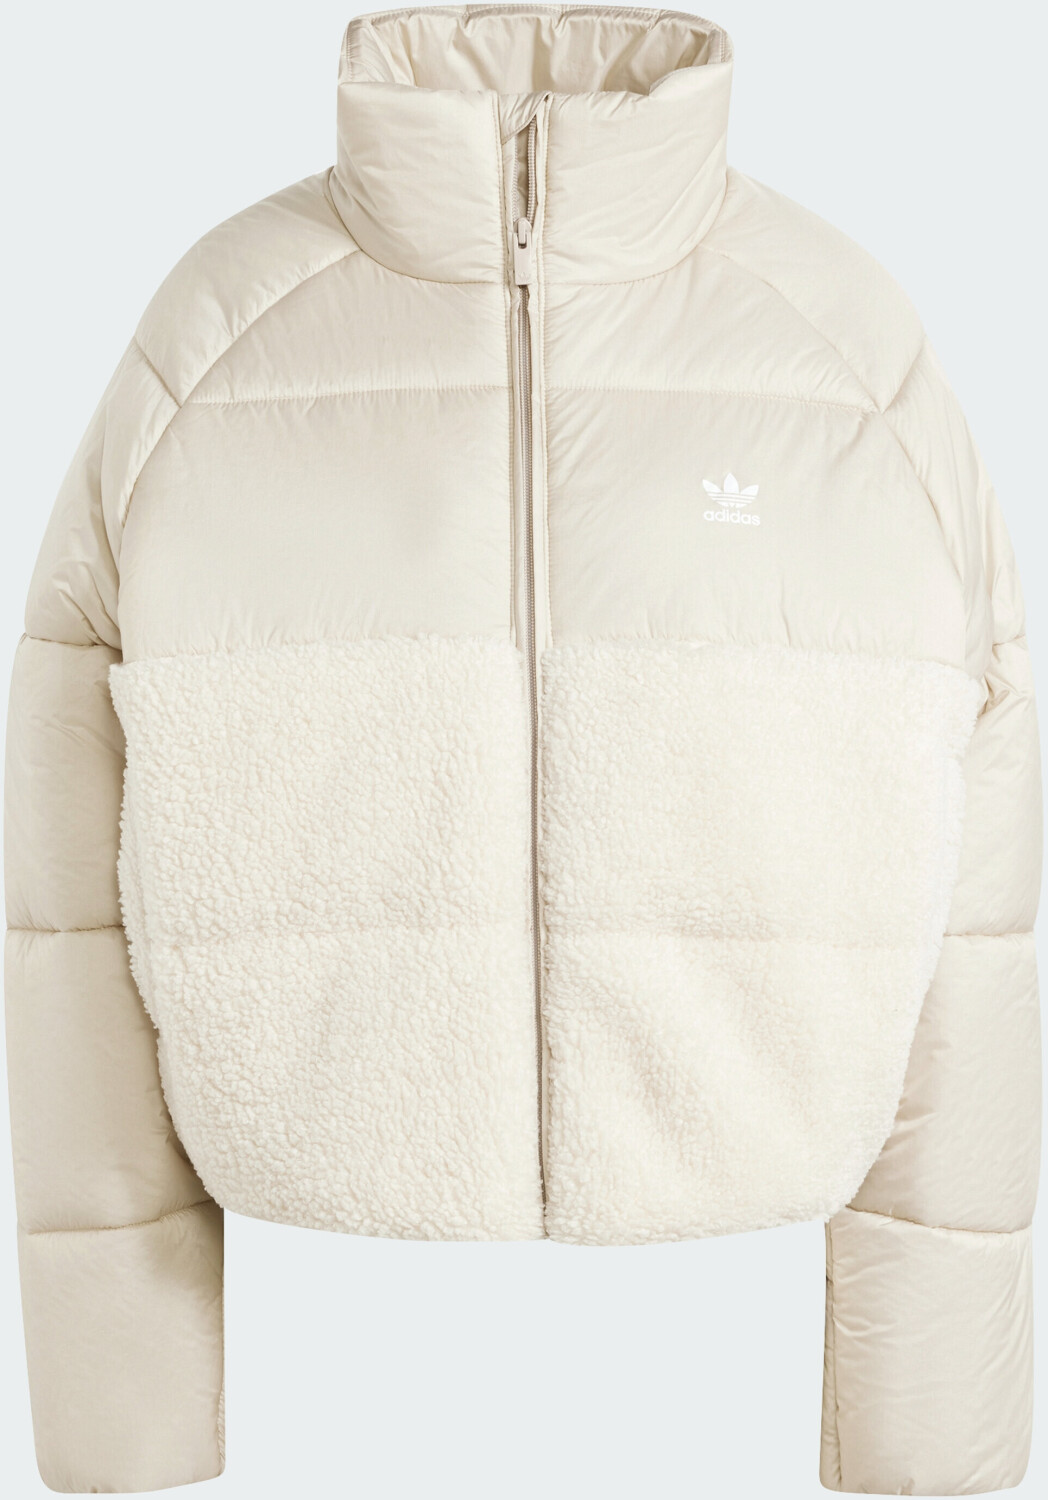 ab white (IS5256) 70,00 € Preisvergleich Court bei Jacket | Polar wonder Adidas Neutral Woman